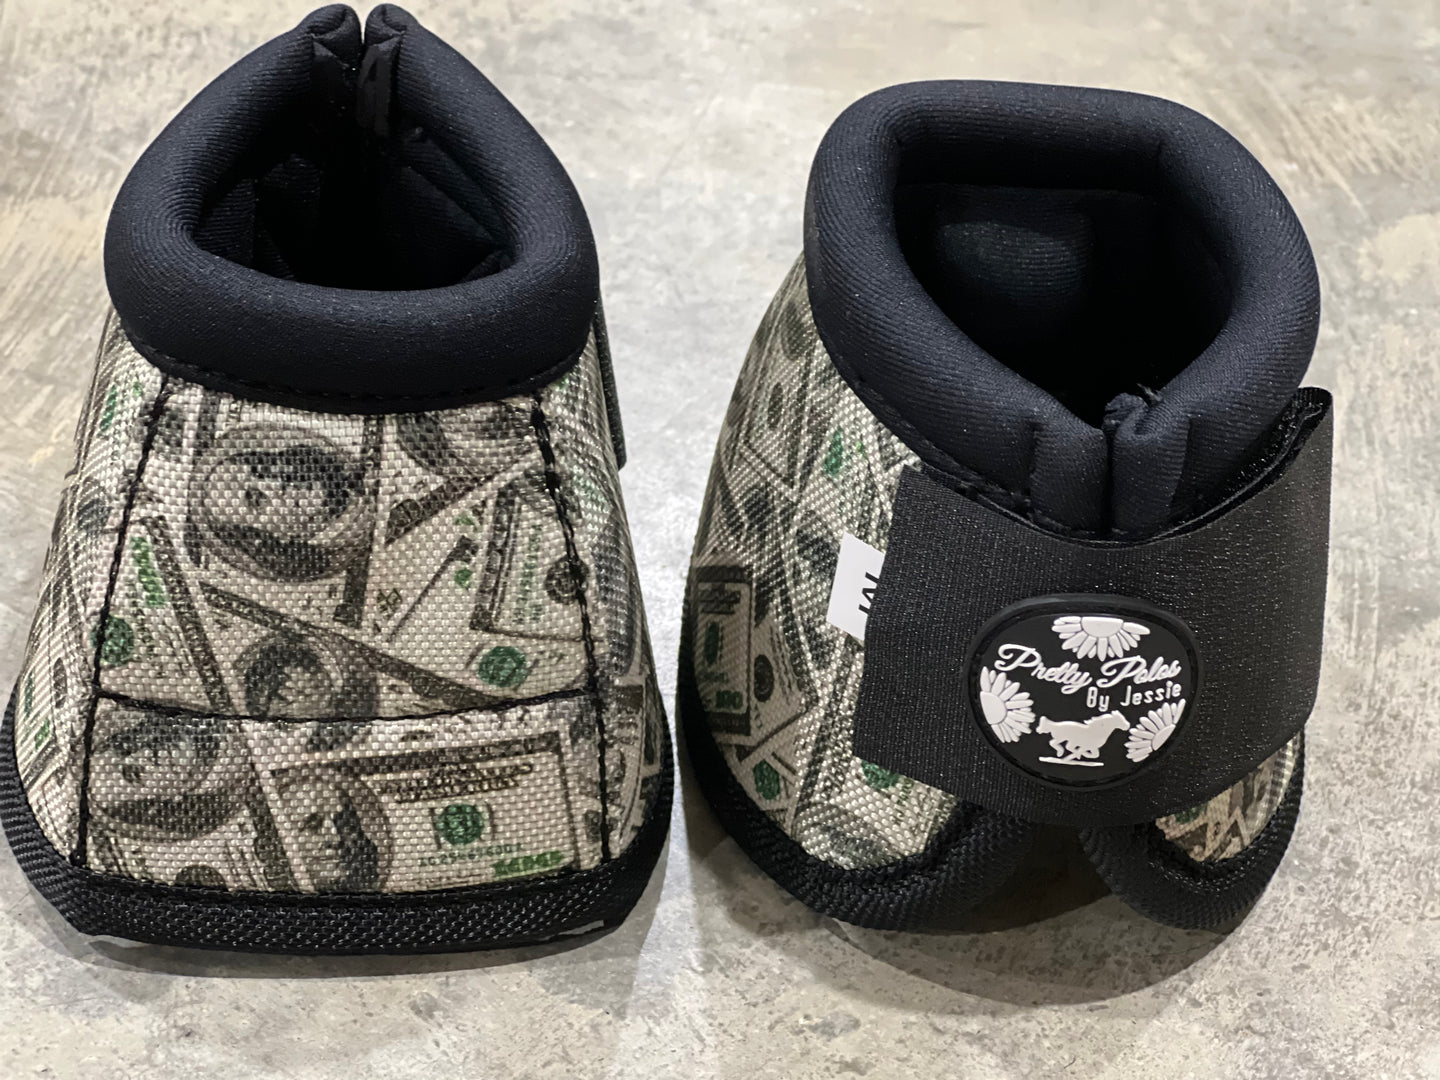 Money Bell Boots